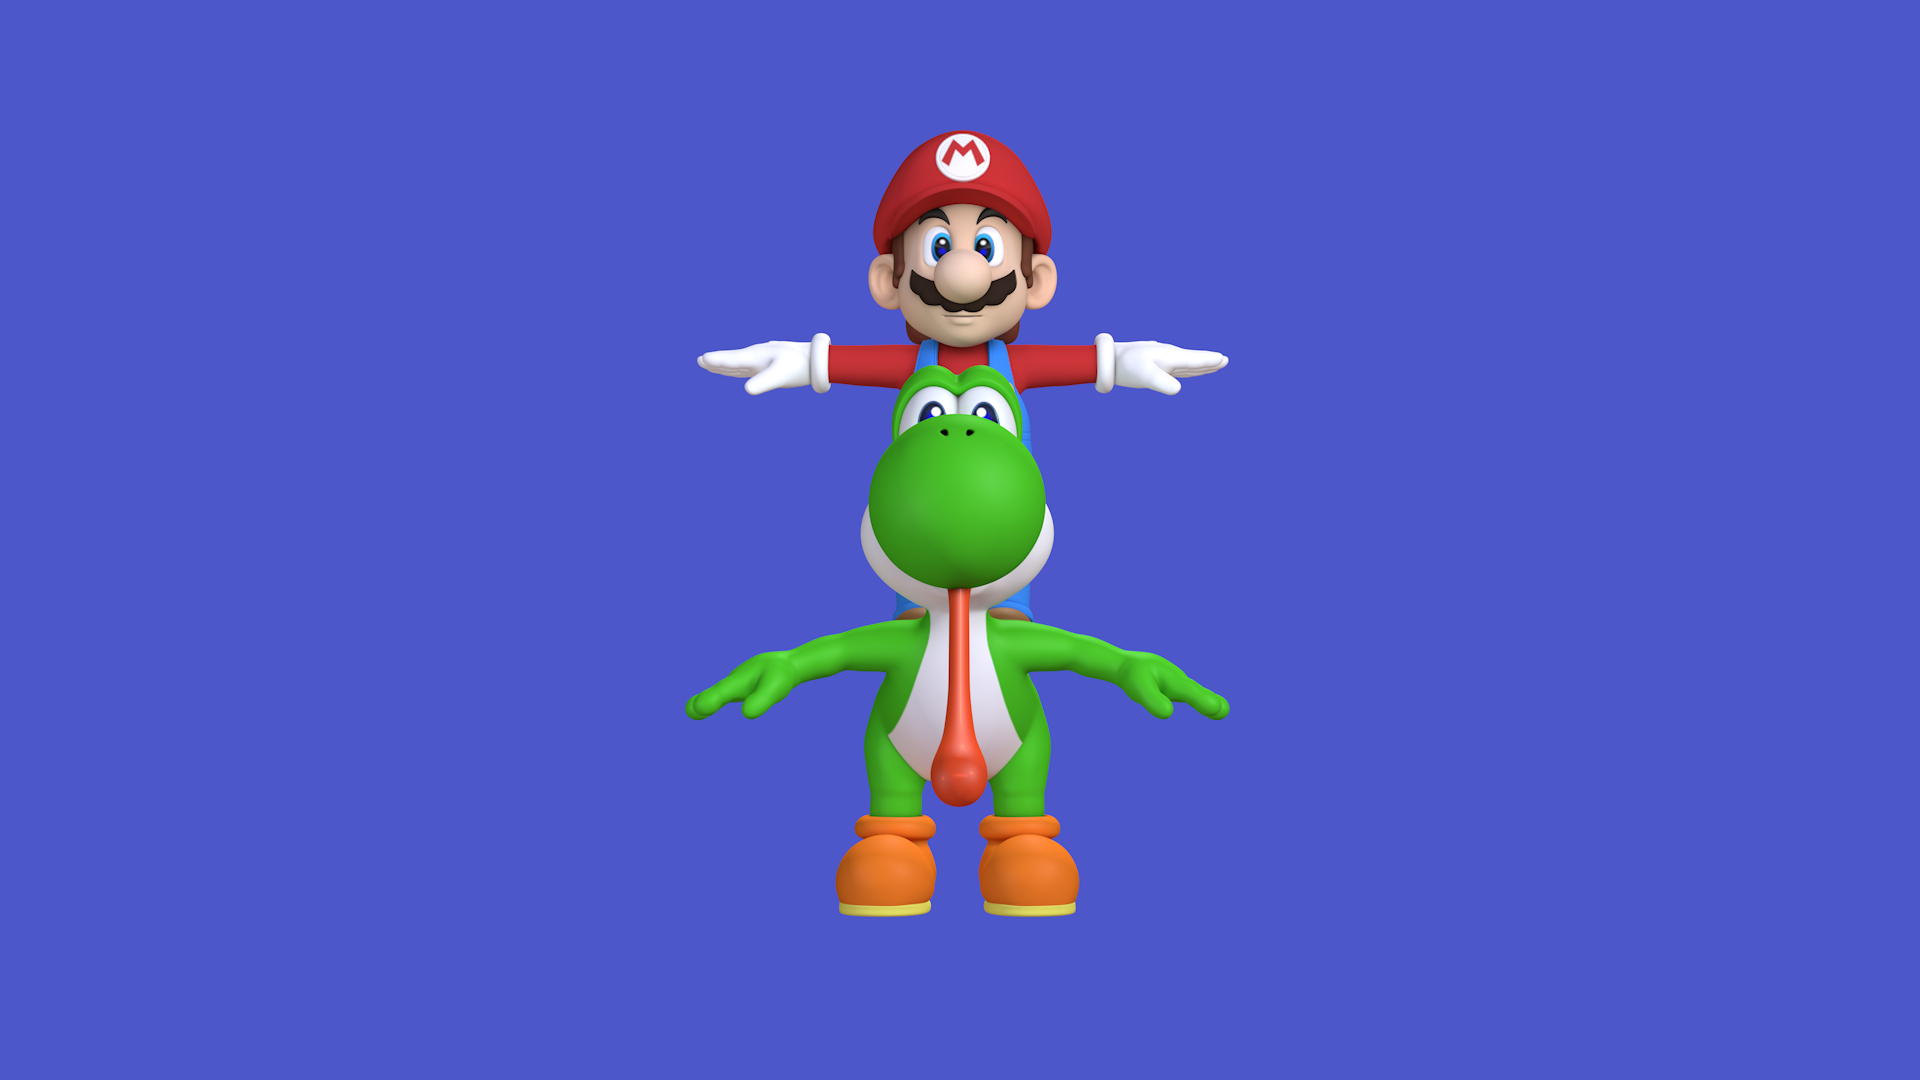 Recursos de personagens do jogo Super Mario e Yoshi Modelo 3D - TurboSquid  1684380